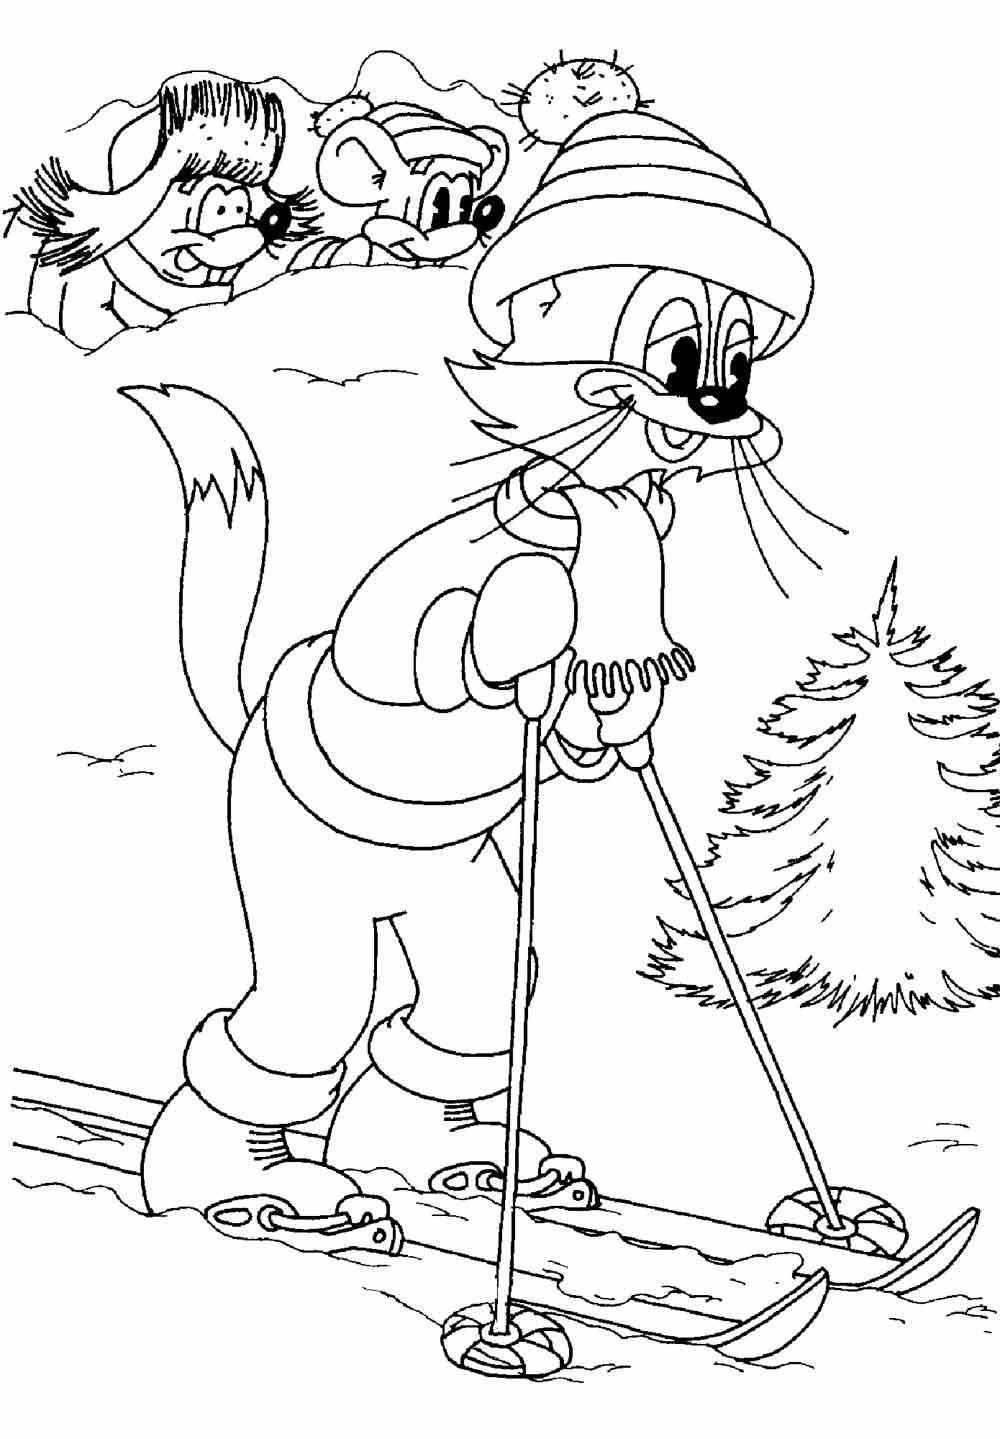 Раскраски про кота Леопольда для малышей  Рисунок кот леопольд на лыжах